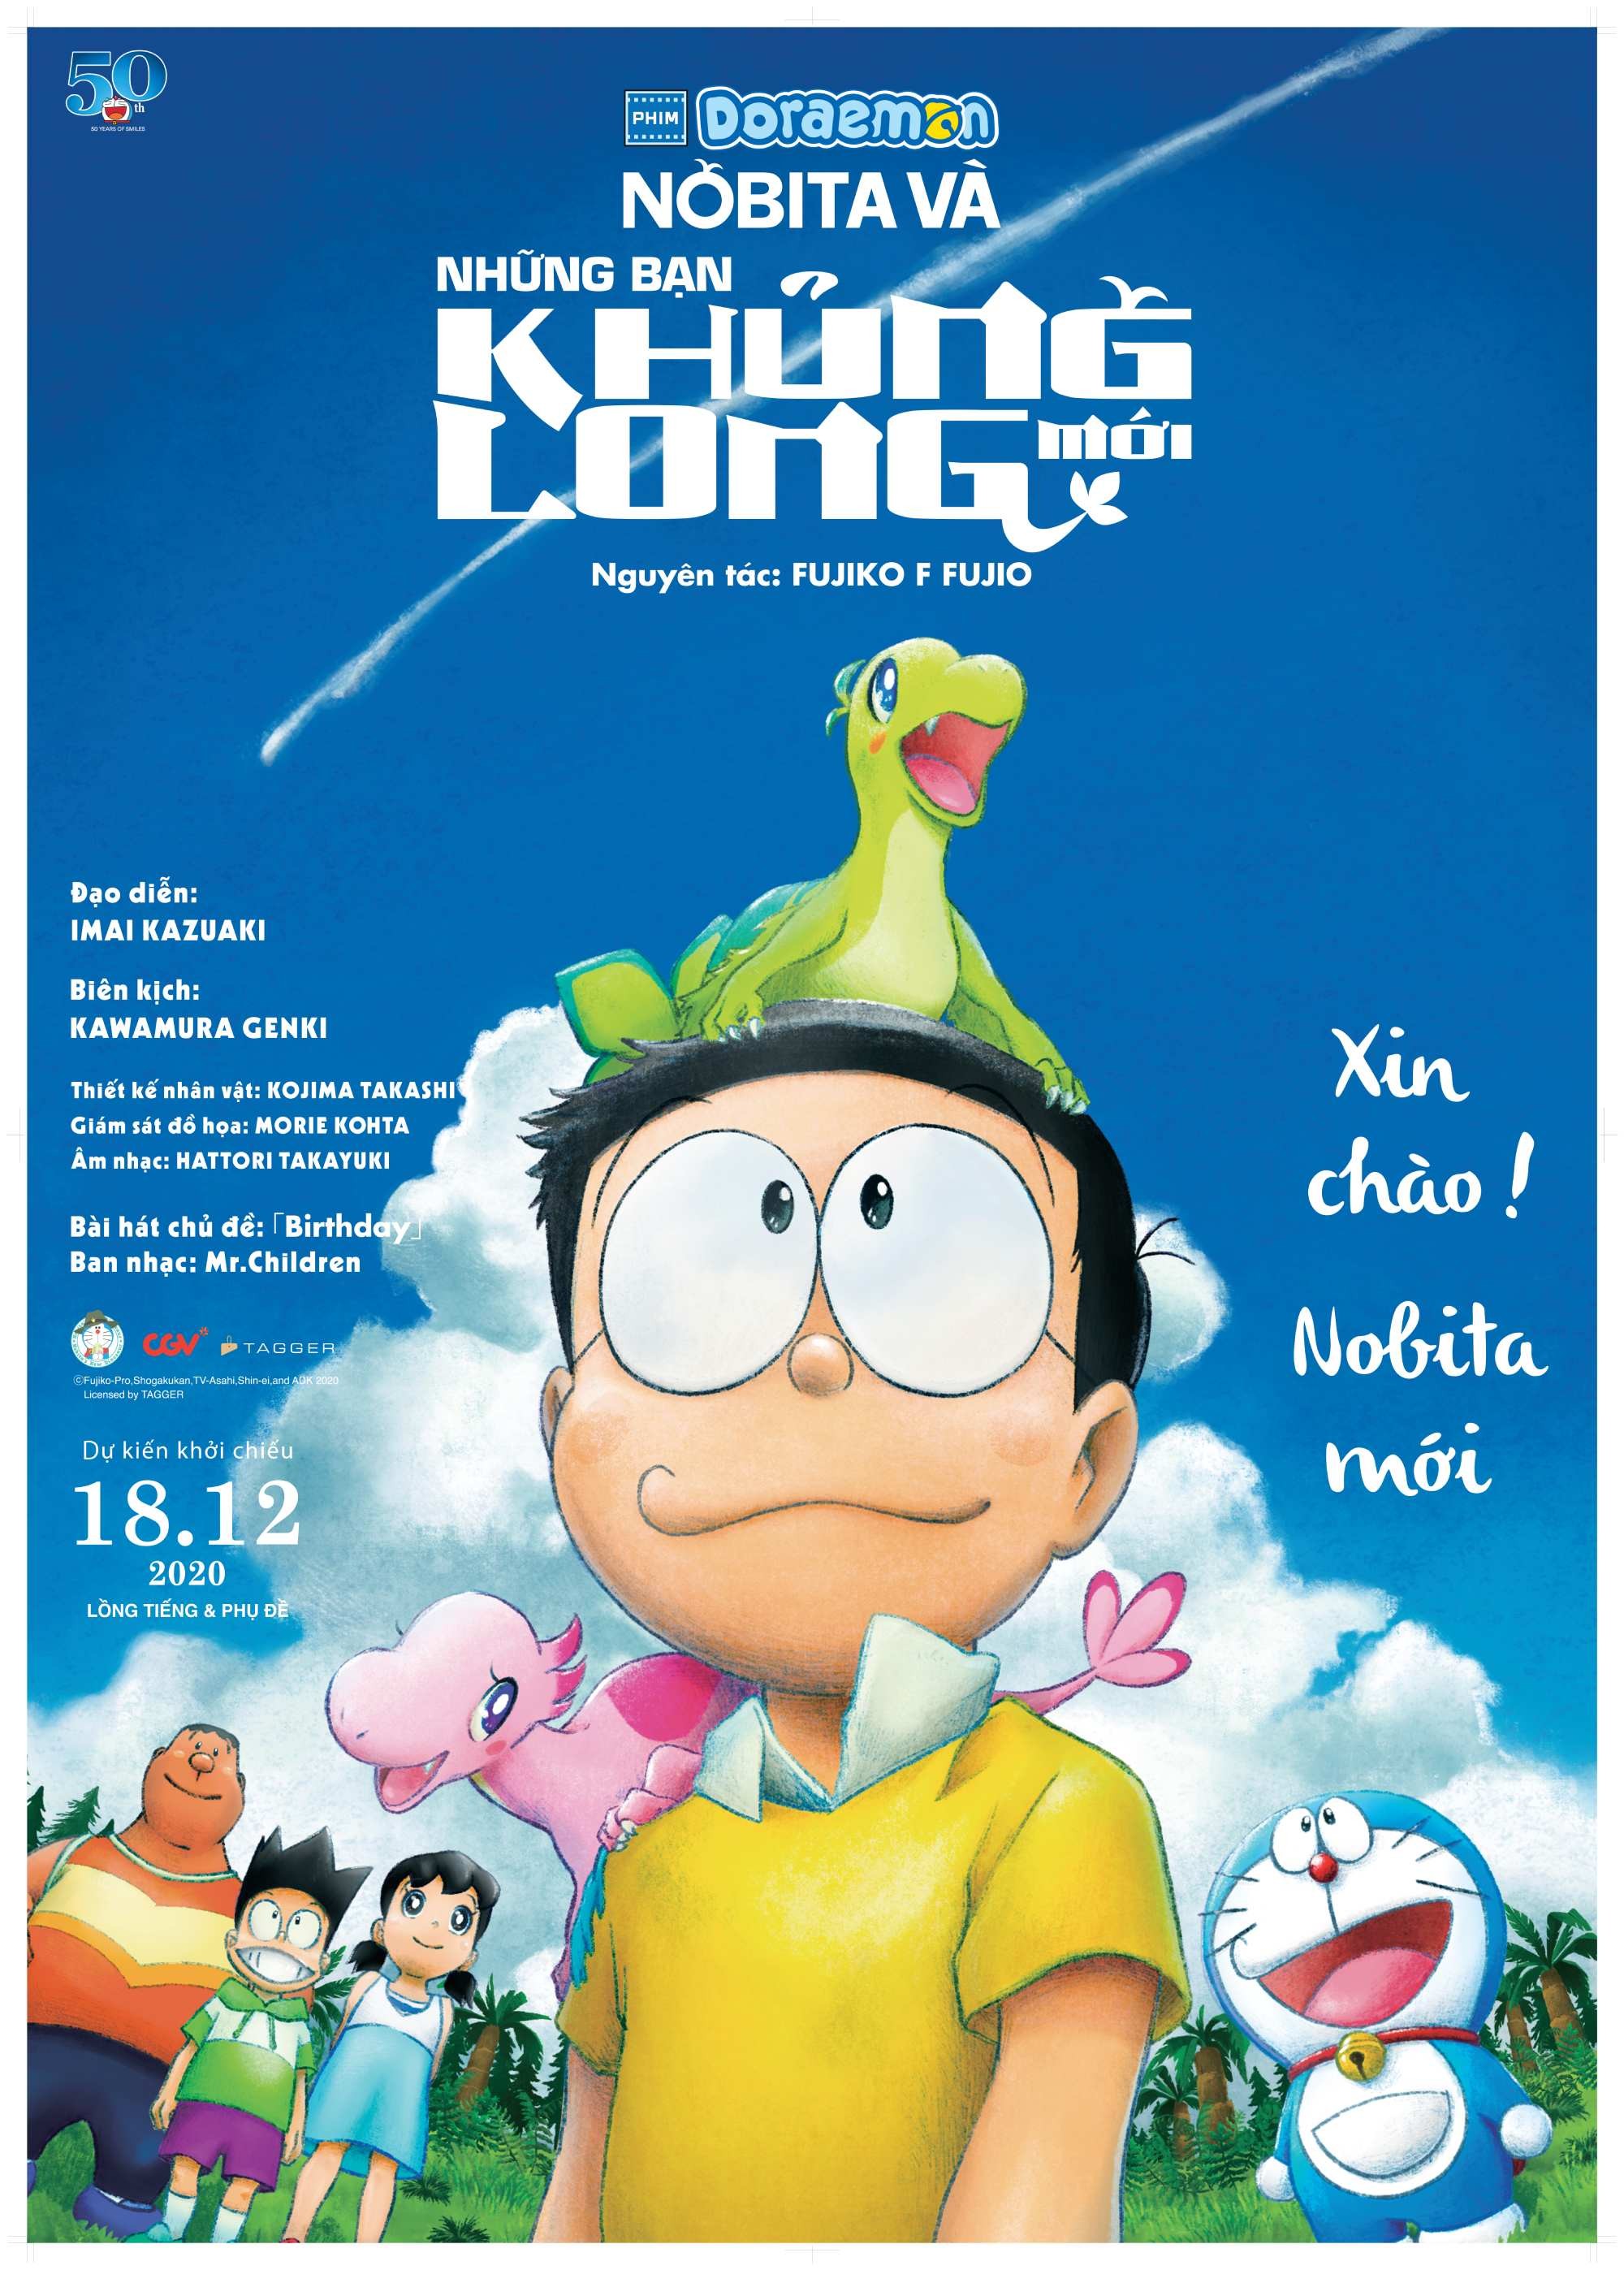 Cách Phim Doraemon Ảnh Hưởng đến Thế Hệ Khán Giả